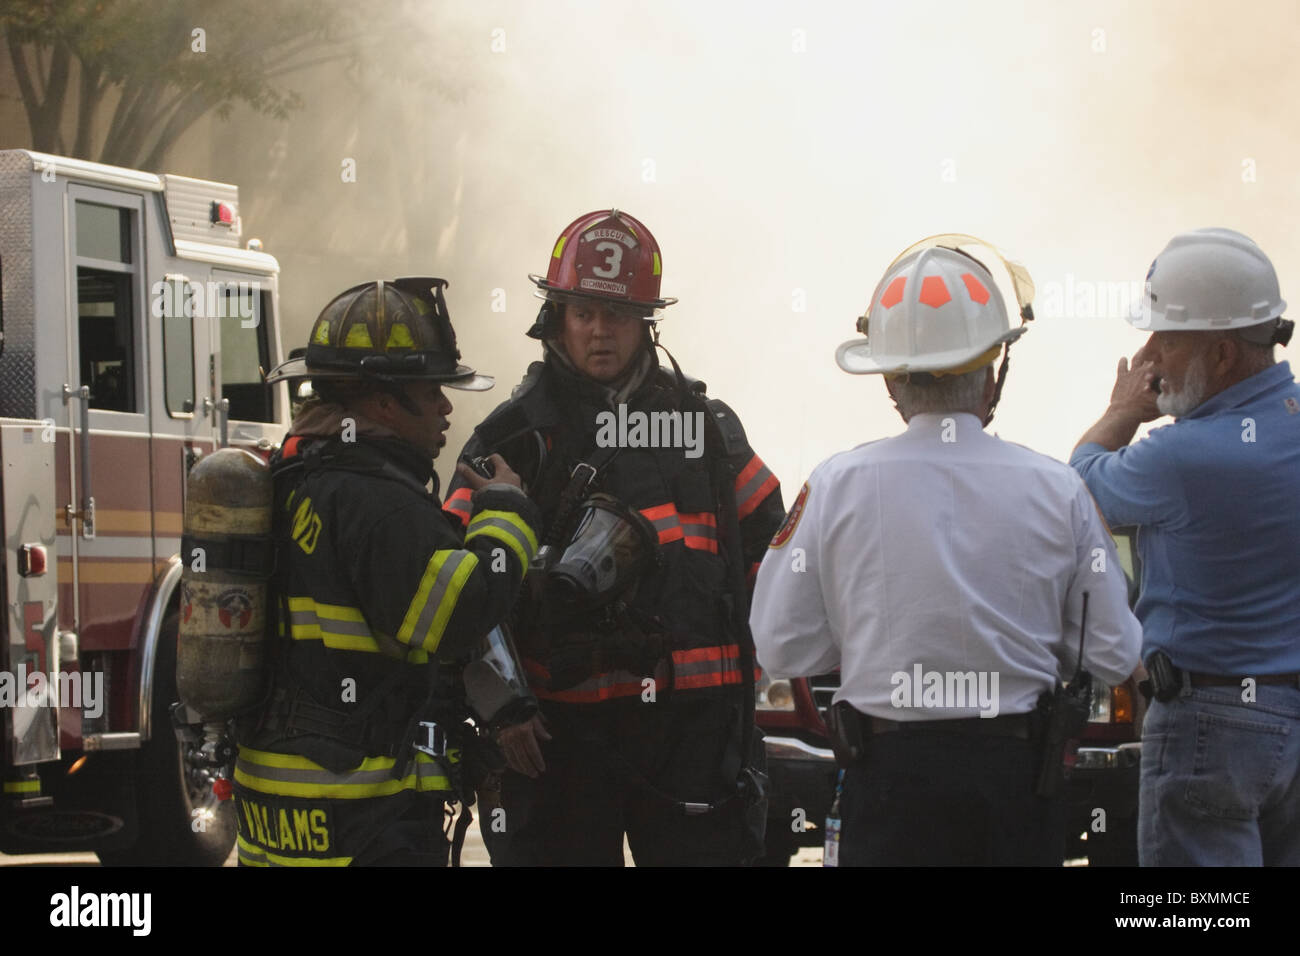 Pompiers lutter contre l'incendie et d'explosion électrique souterrain à la Banque d'Amérique, Richmond, Virginie, 2010 Banque D'Images